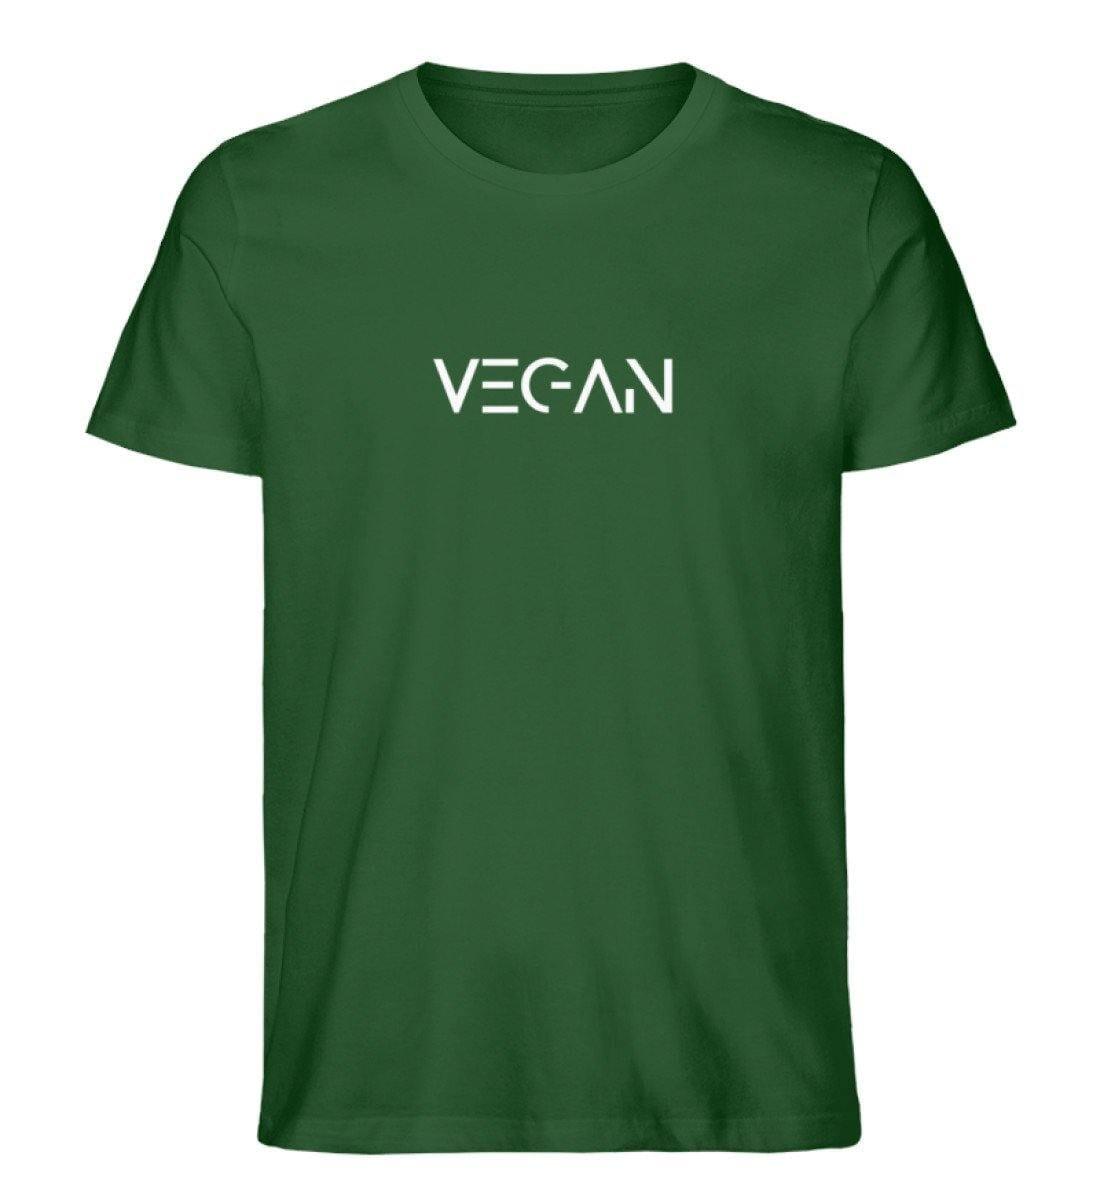 V E G A N - Unisex Organic Shirt - Team Vegan © vegan t shirt